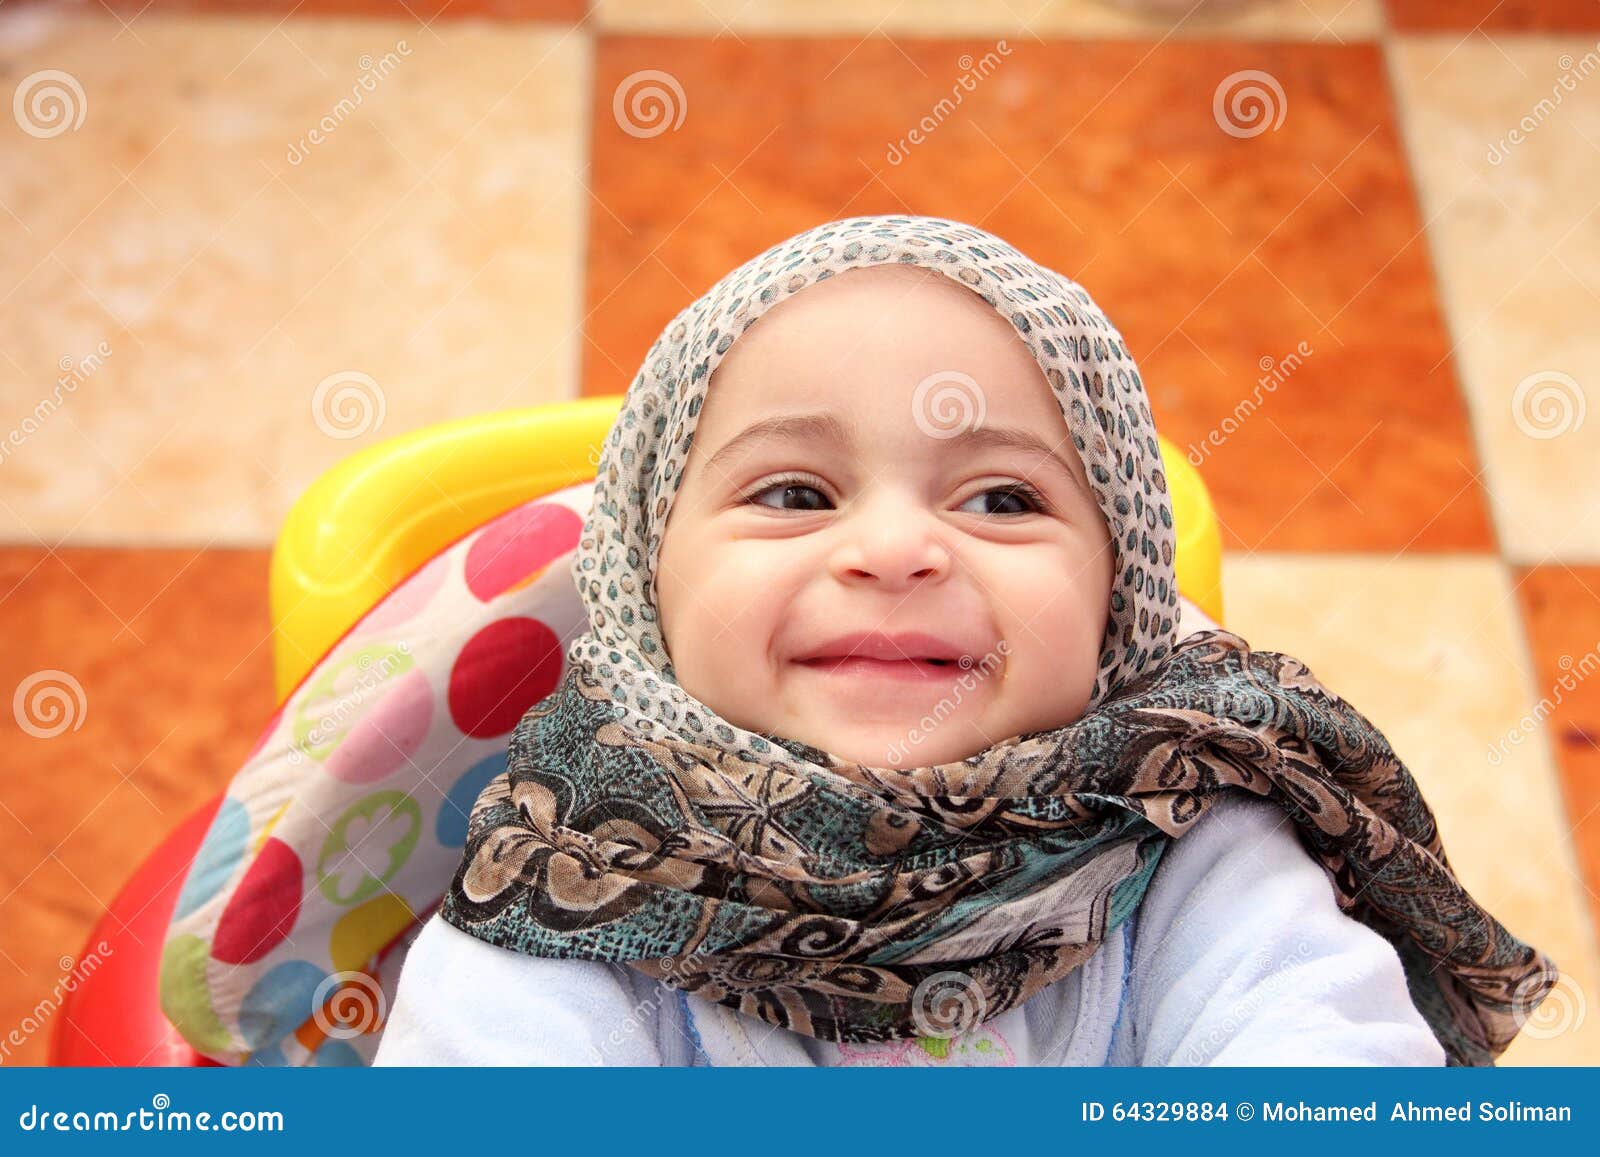 Muslim Baby Girl Stock Photo - Image: 64329884